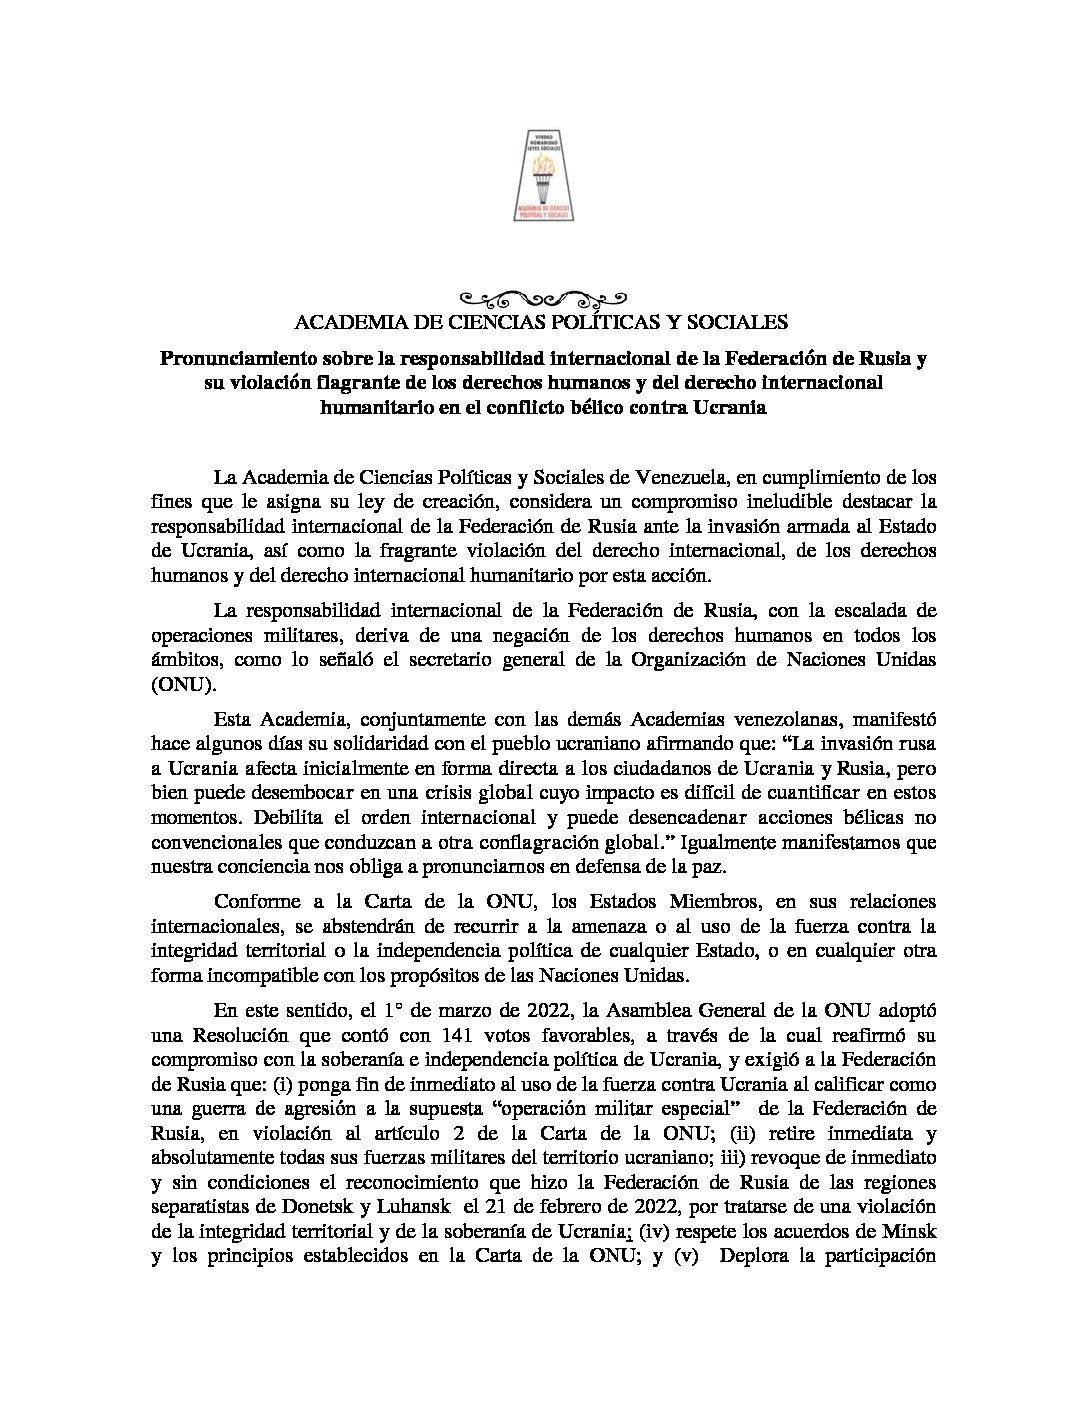 Pronunciamiento sobre la responsabilidad internacional de la Federación de Rusia y su violación flagrante de los derechos humanos y del derecho internacional humanitario en el conflicto bélico contra Ucrania